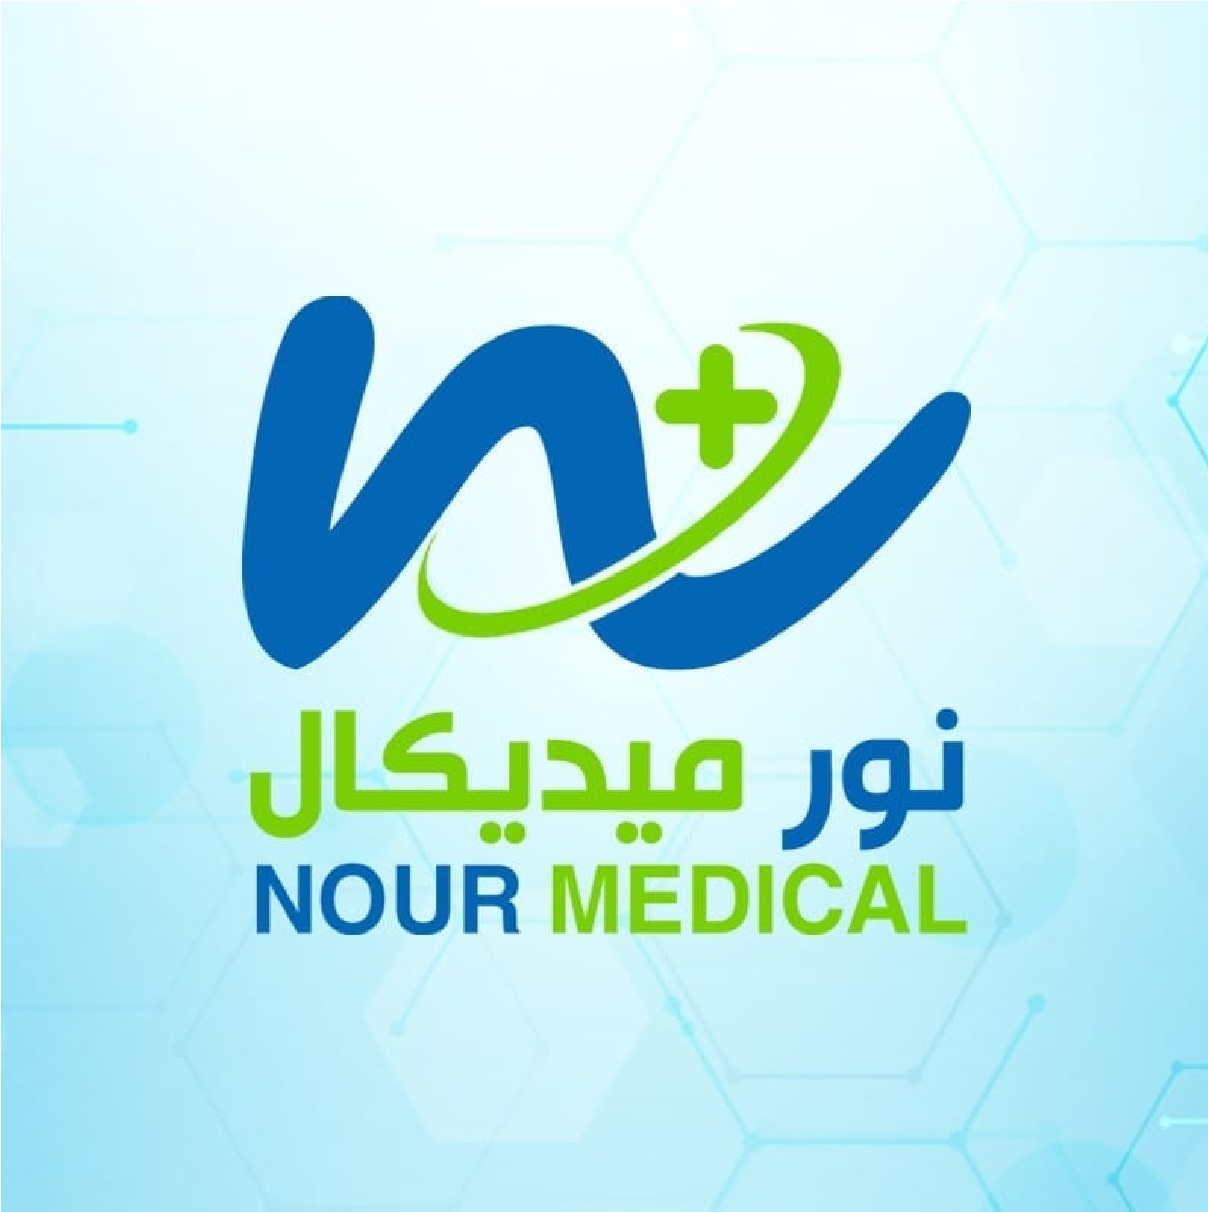 Nour Medical